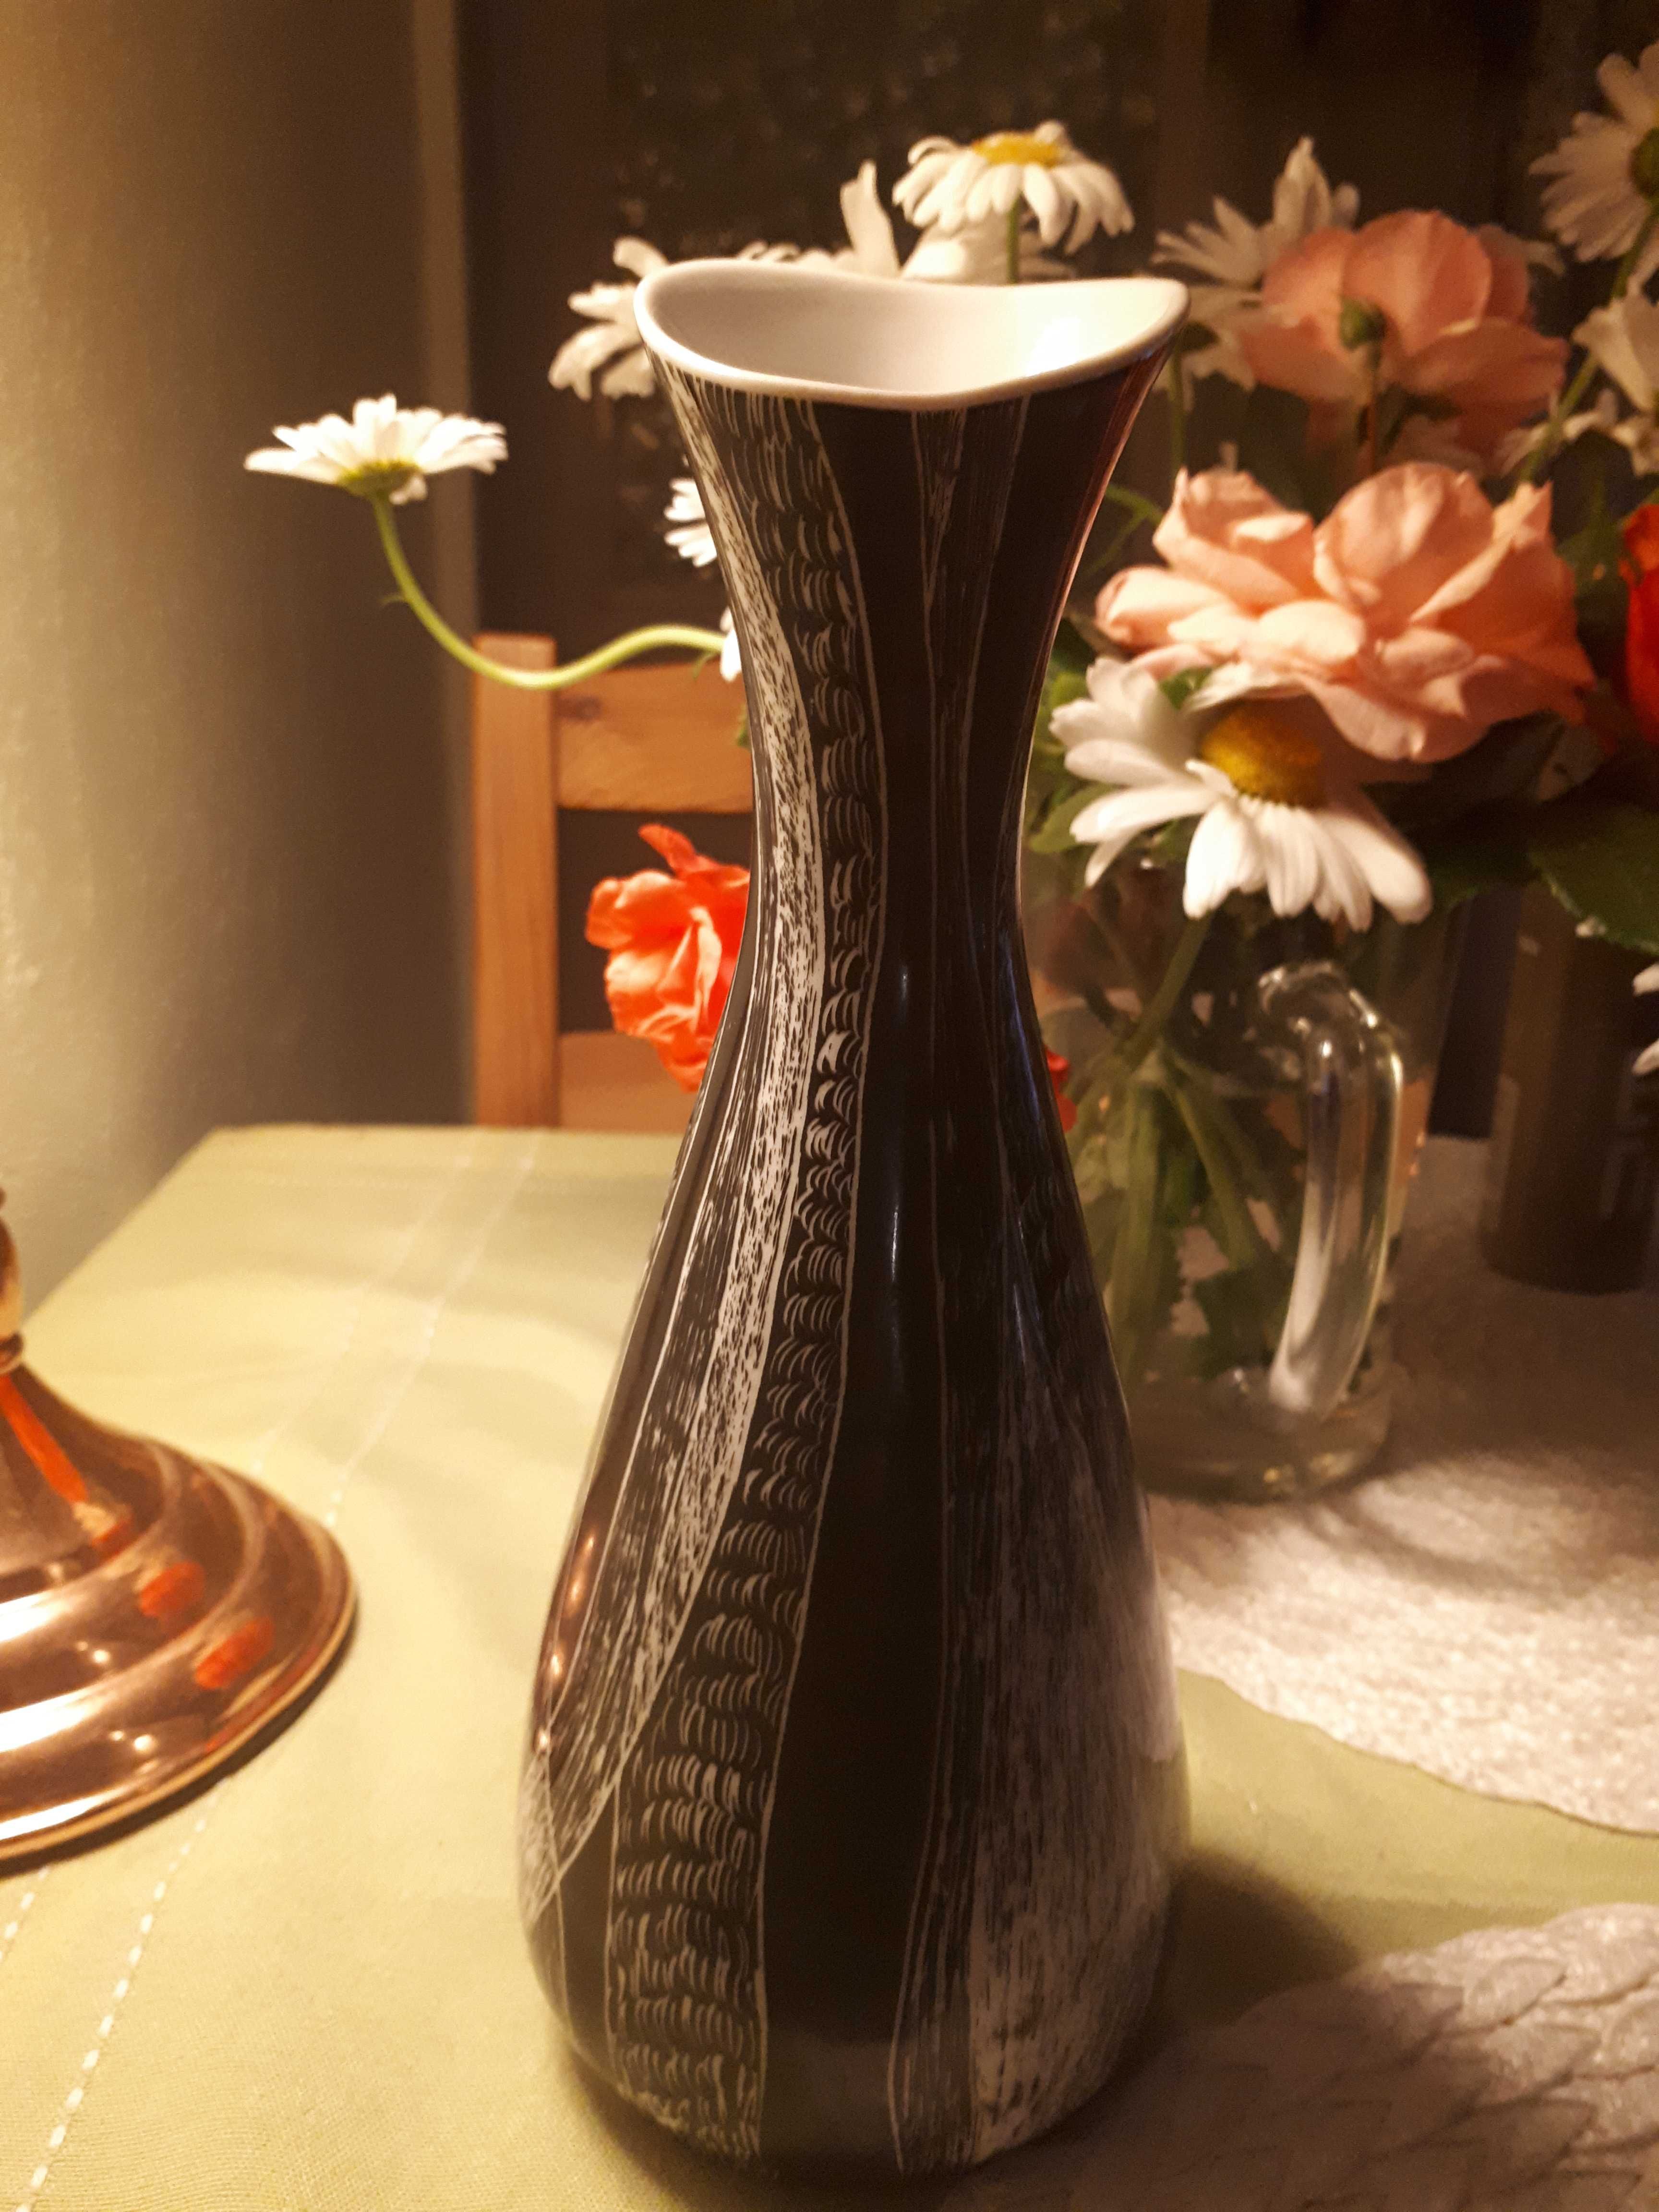 Unikatowy wazon porcelanowy kolekcjonerski "Świt" Morzejko, Wałbrzych.